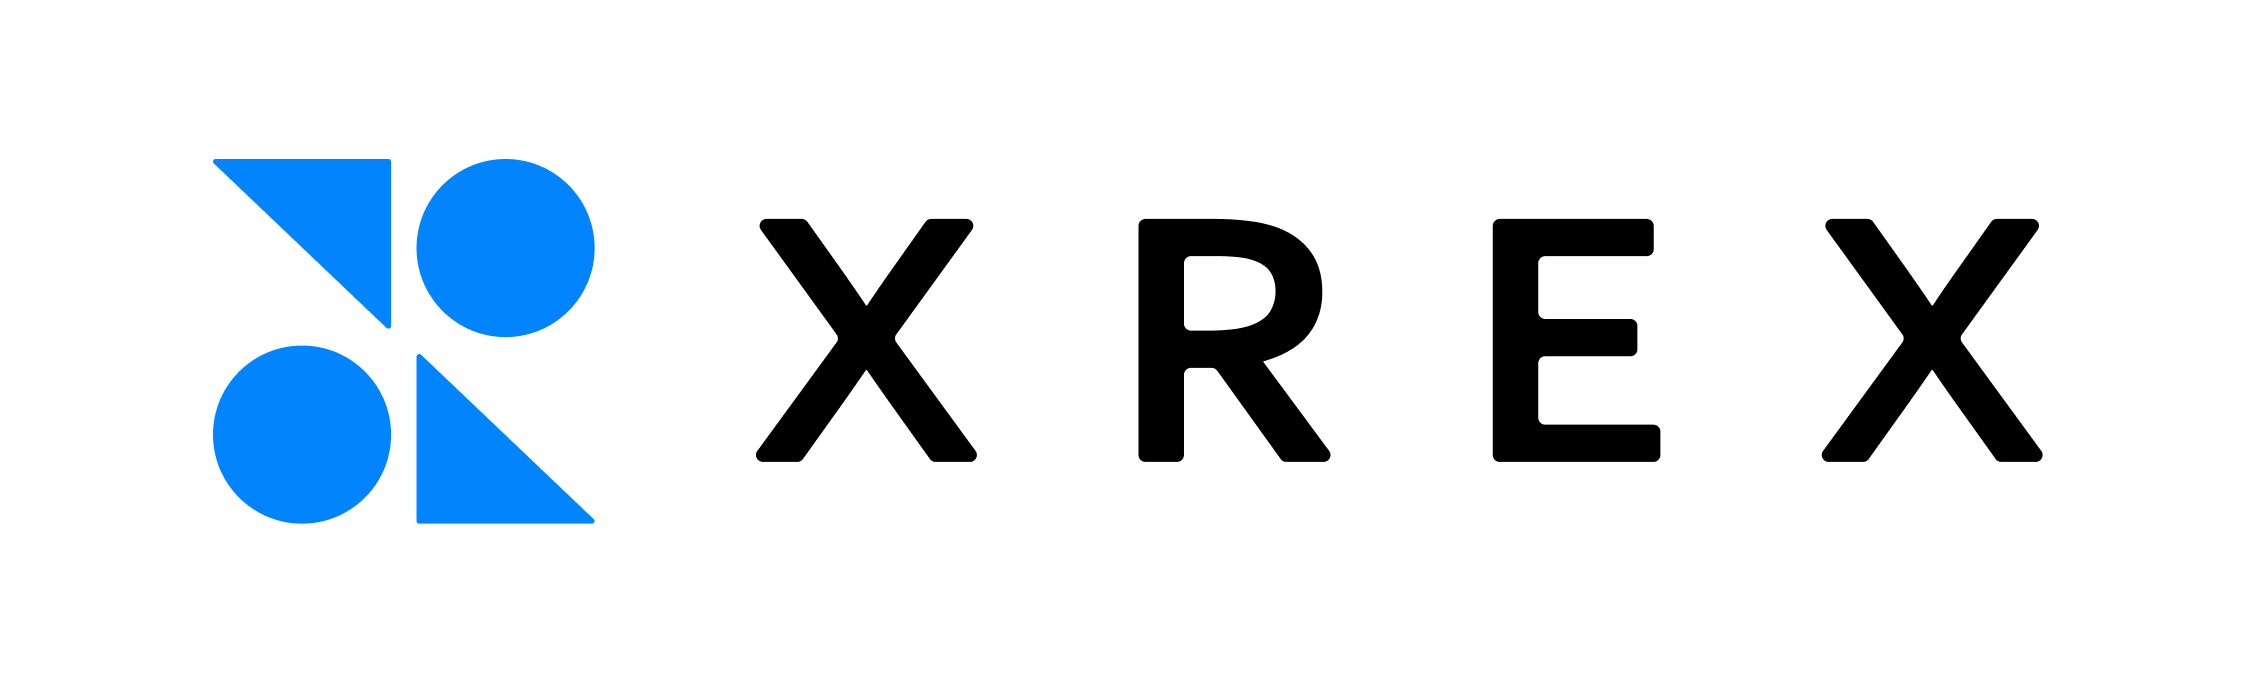 XREX_Logo.jpg